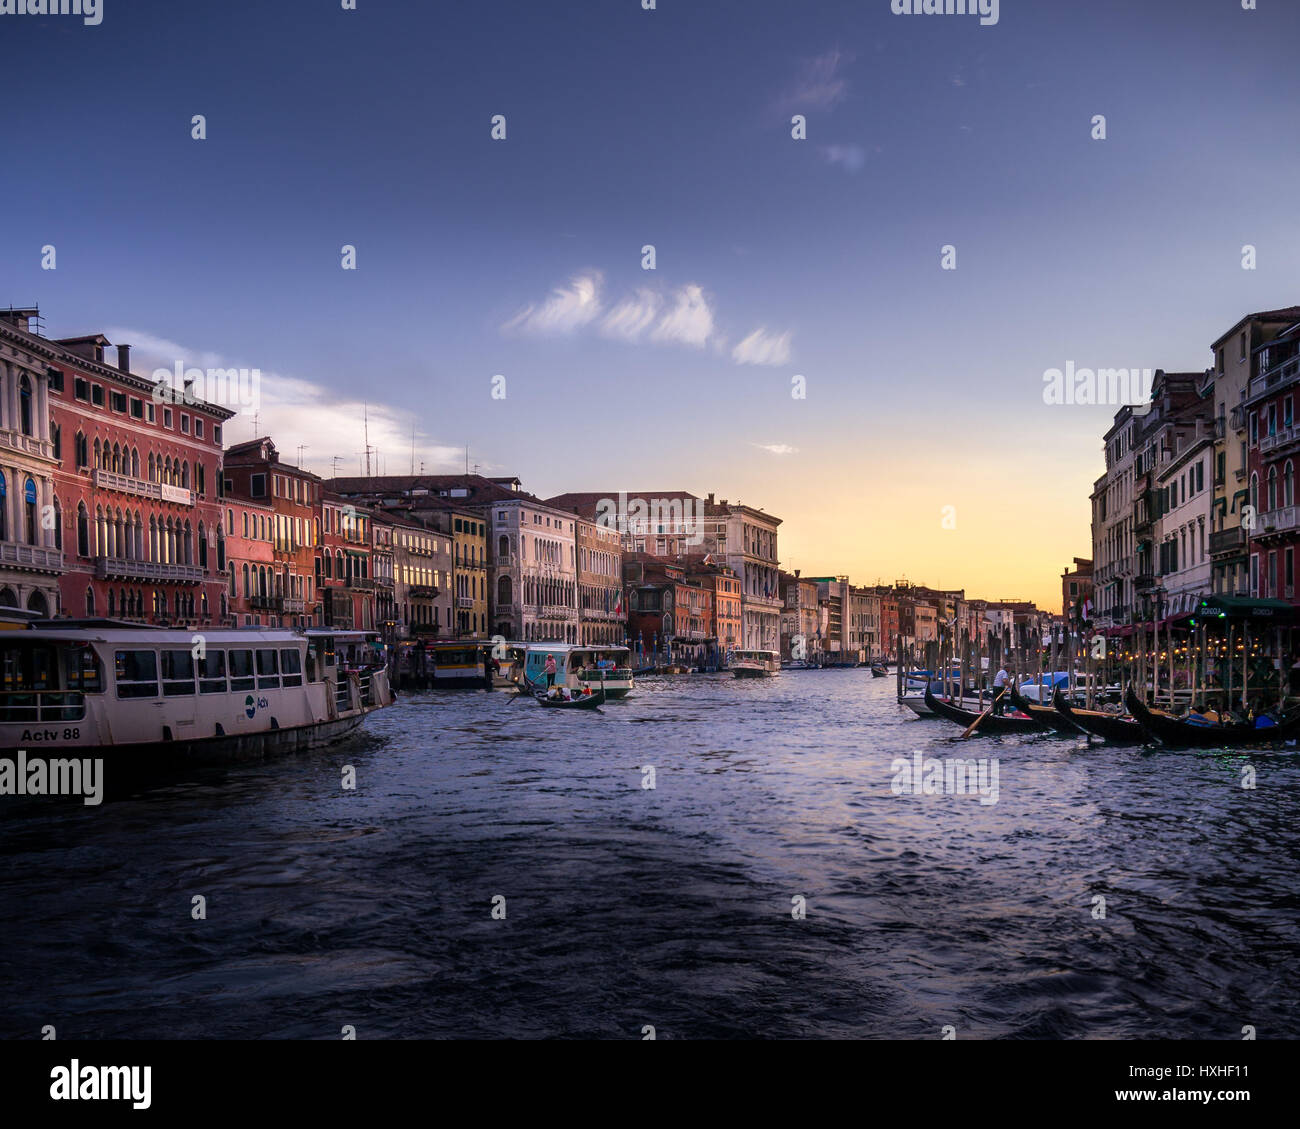 Luz y color en el Gran Canal de Venecia. Foto de stock